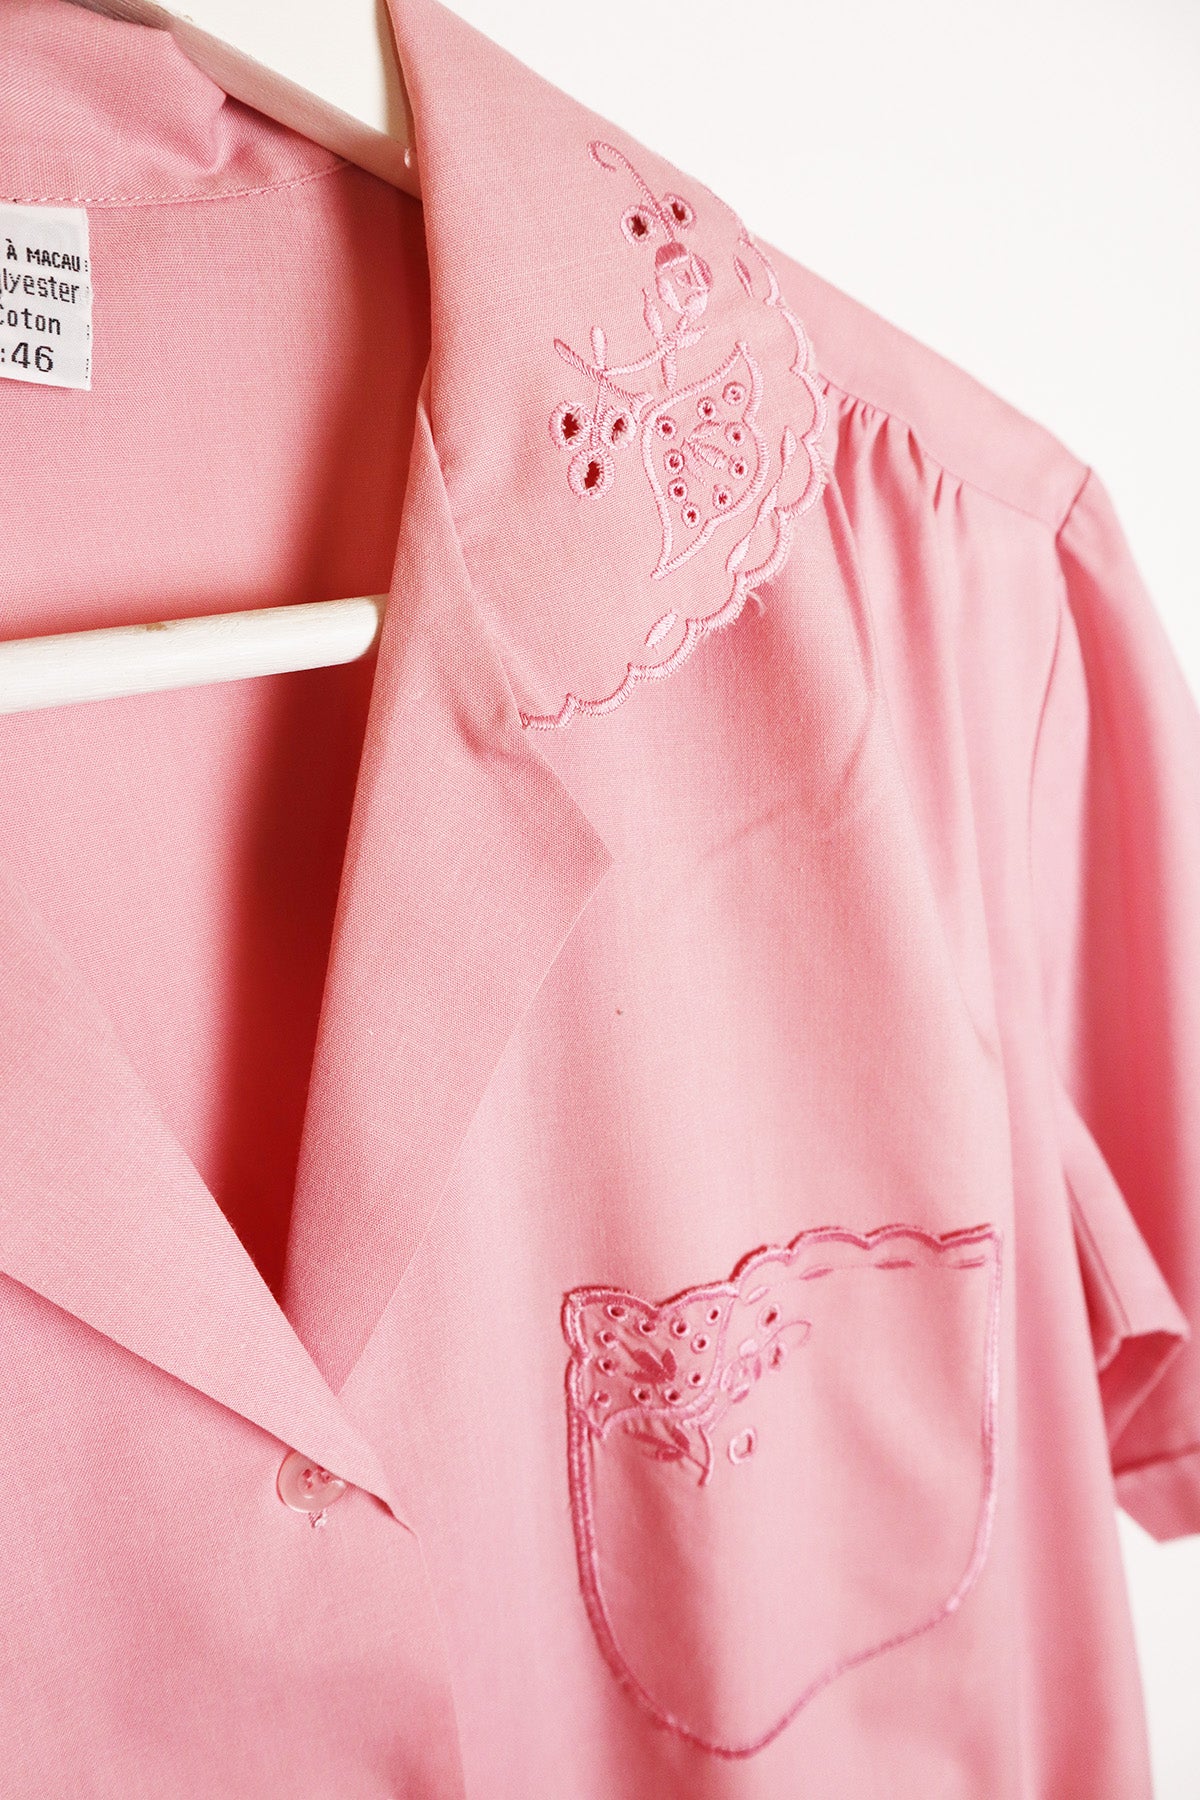 Bluse Vintage Rosa Kragen Bogenkante ( Gr. M-XL )